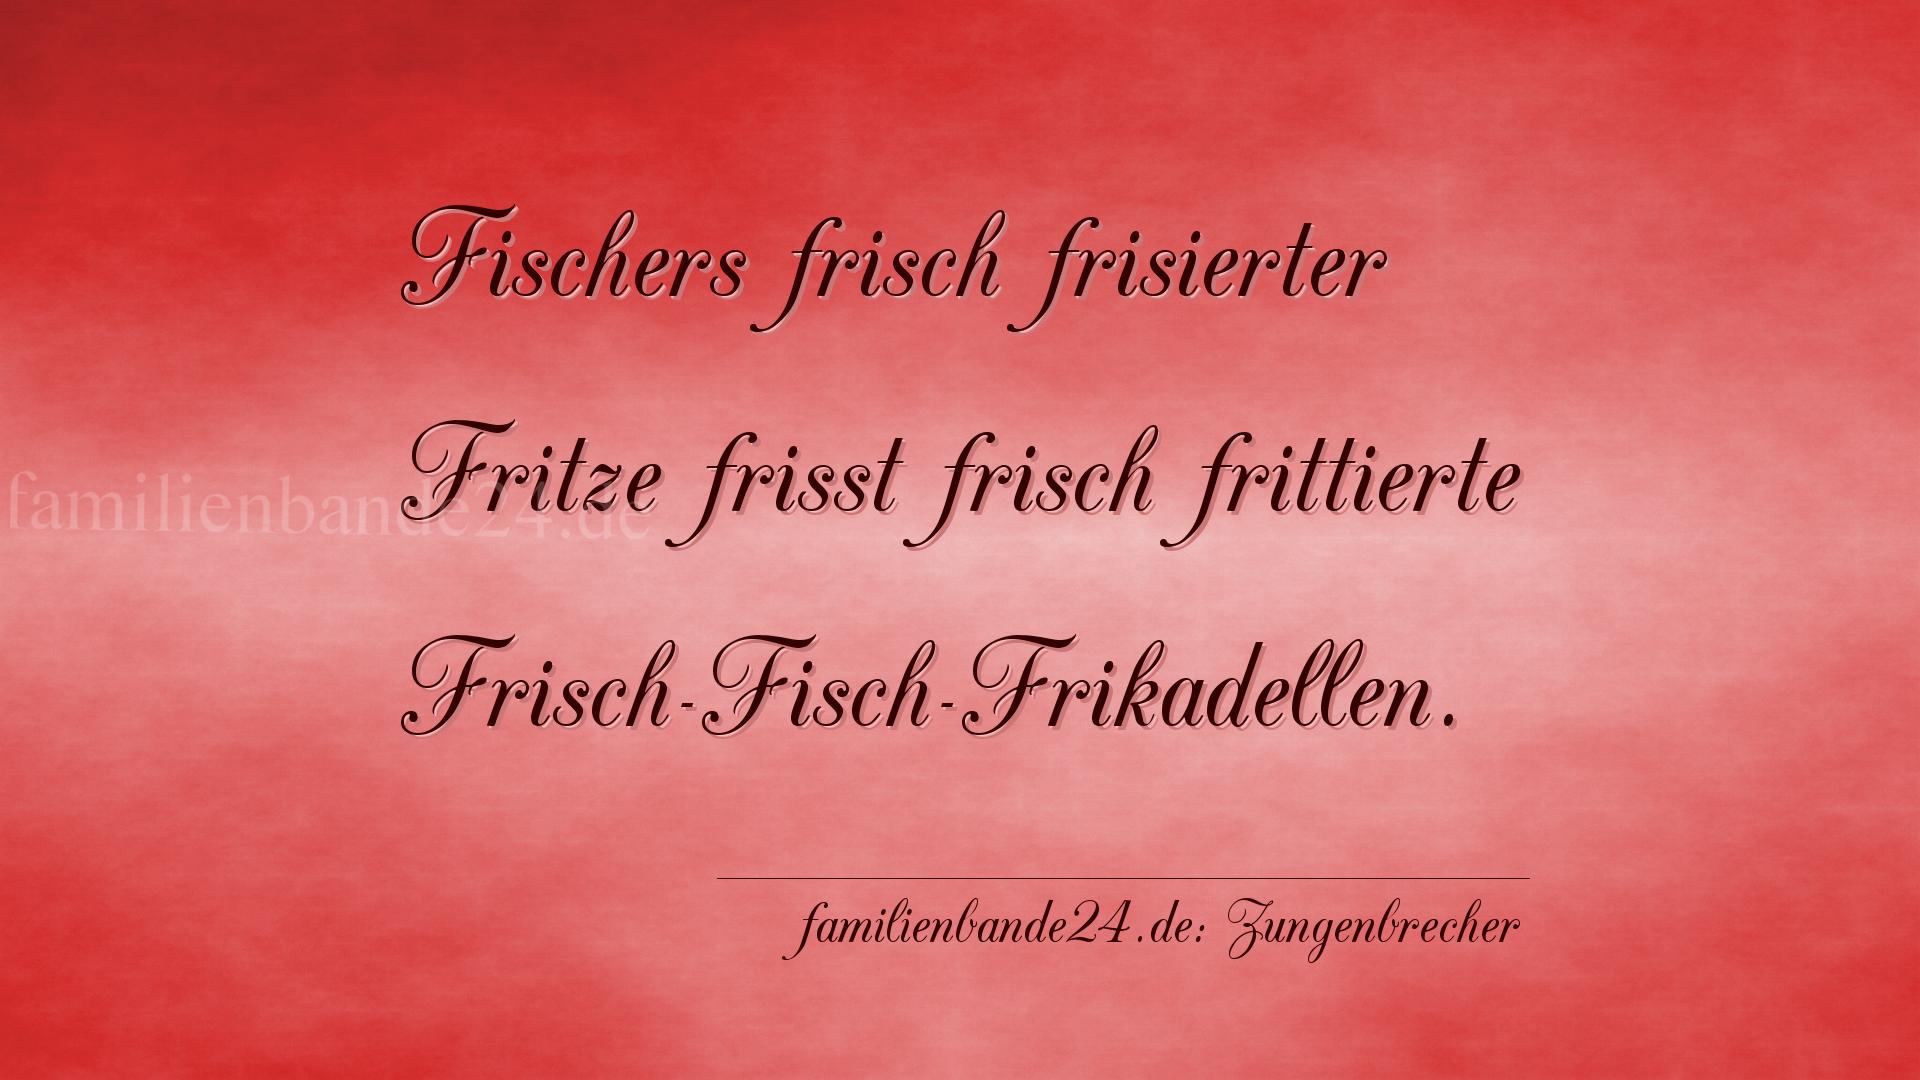 Zungenbrecher Nummer 702: Fischers frisch frisierter Fritze frißt frisch frittierte [...]